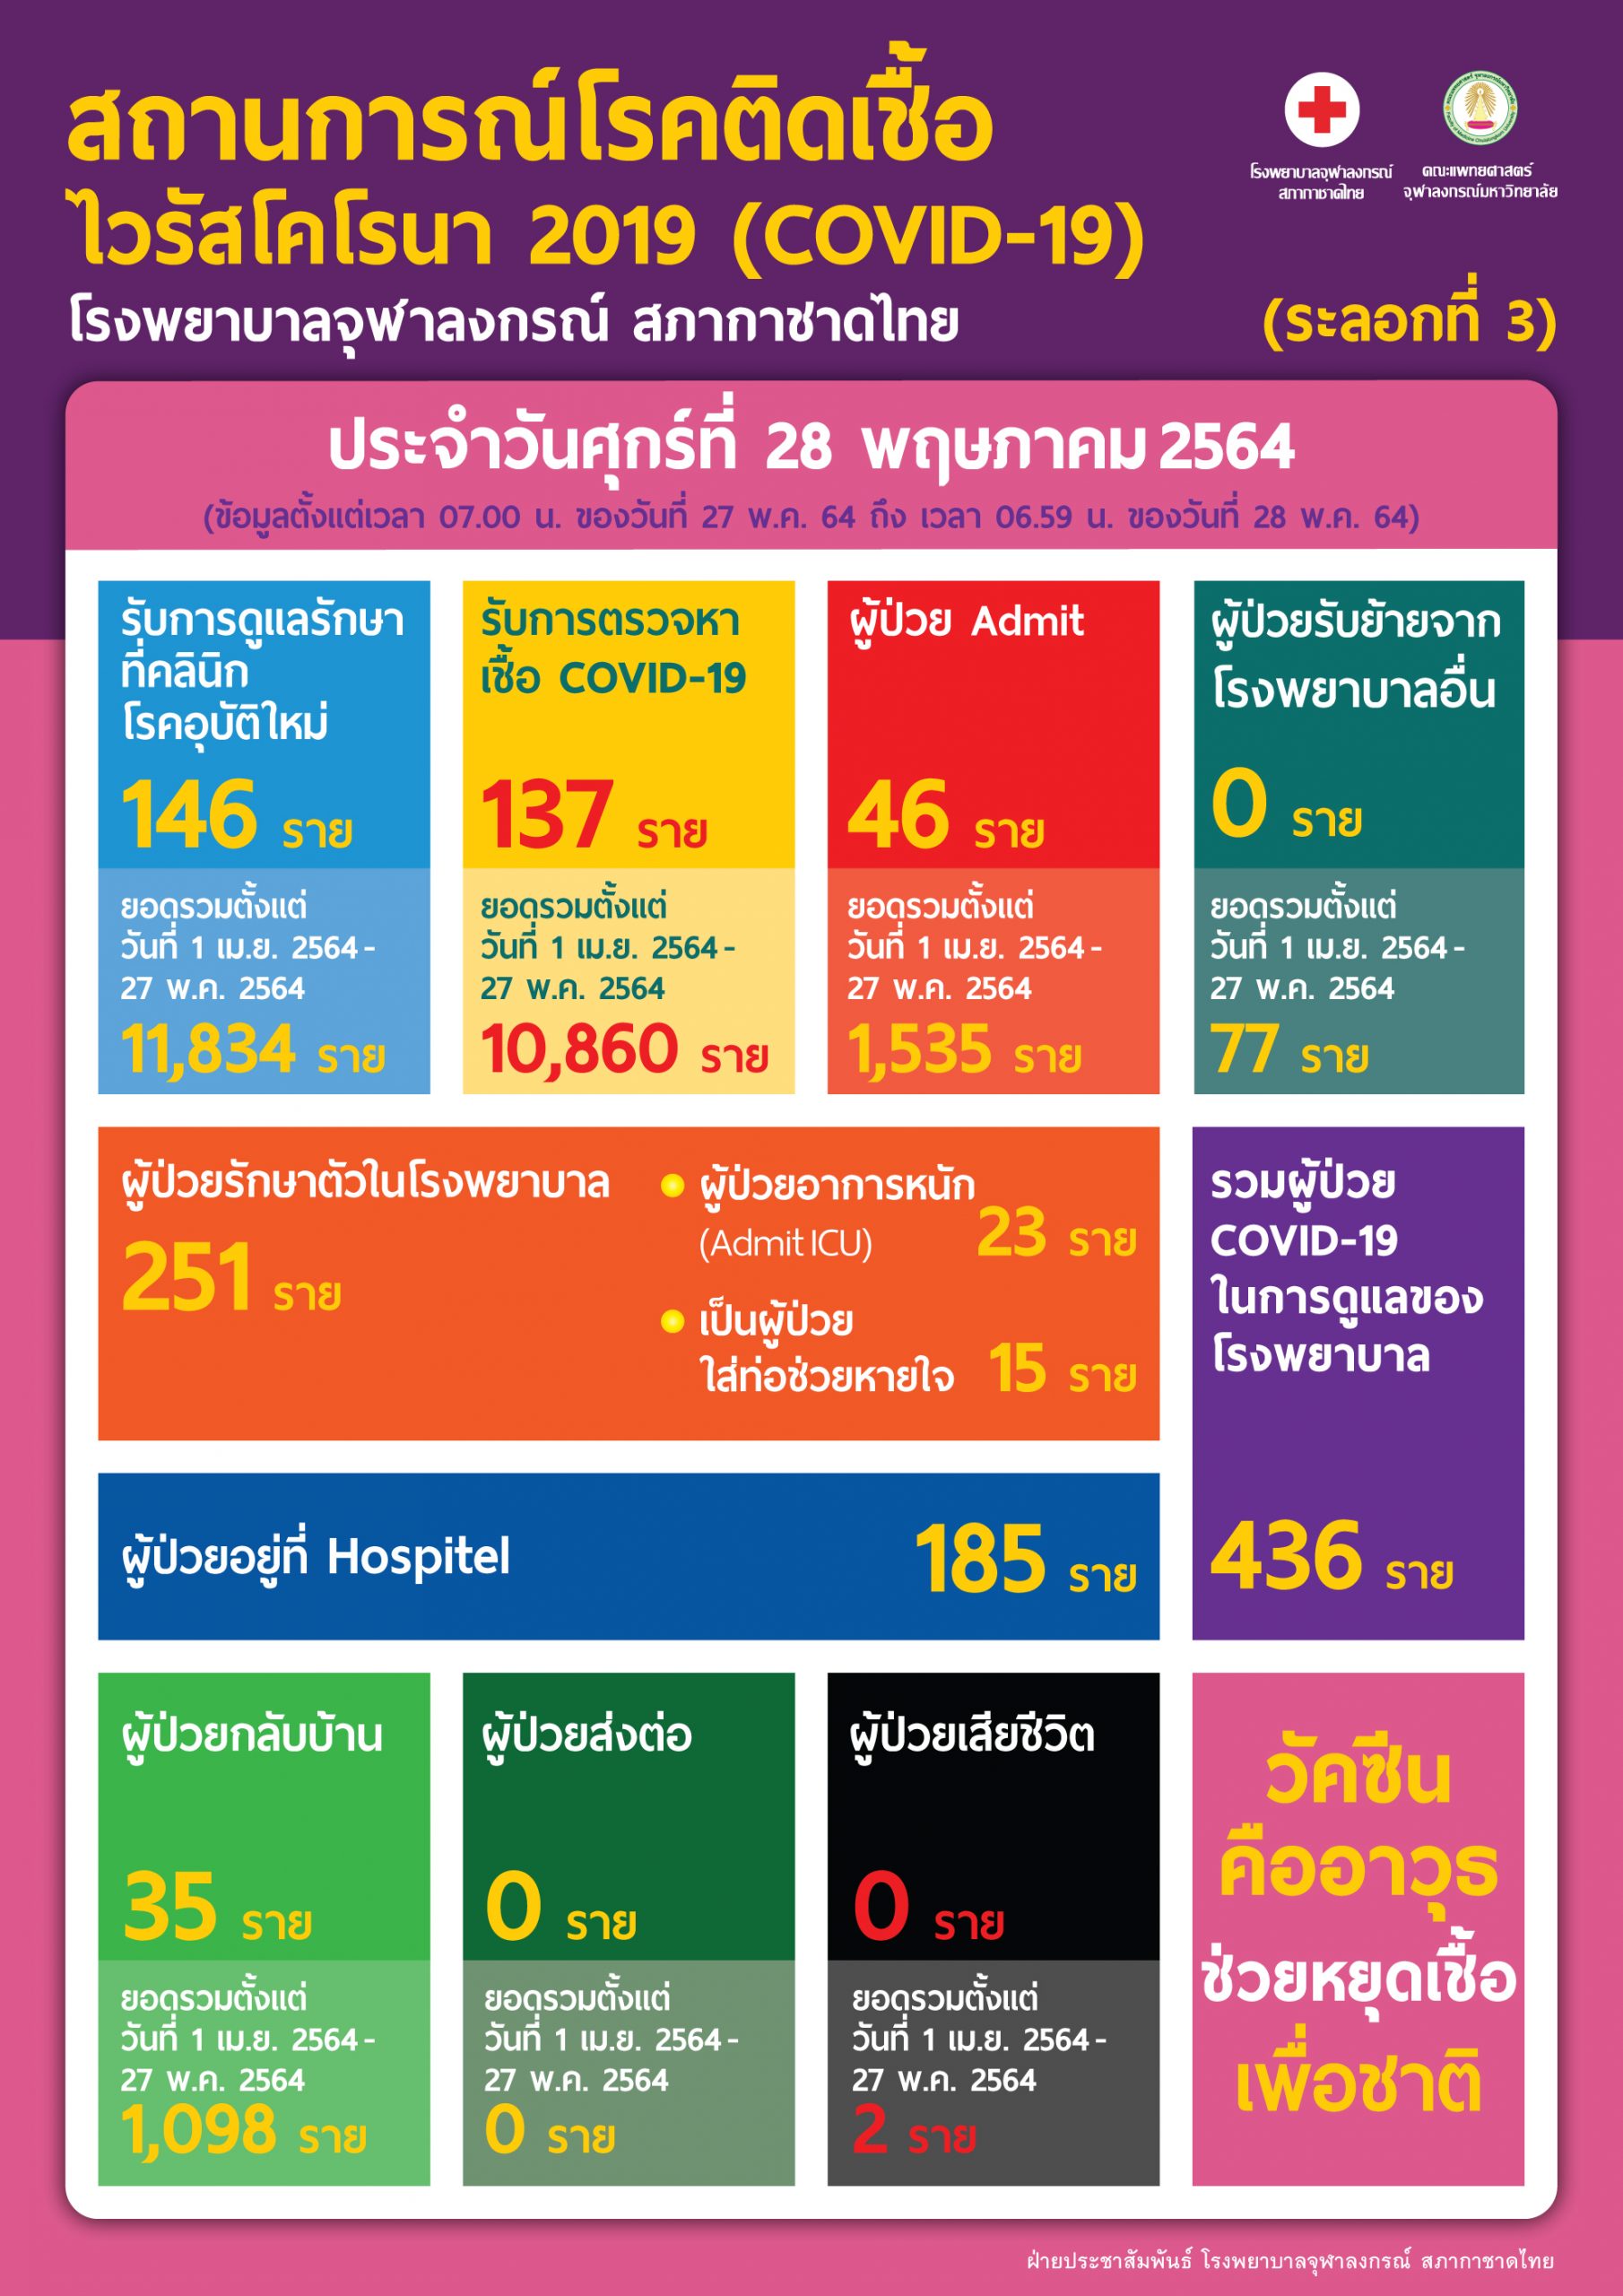 สถานการณ์โรคติดเชื้อ ไวรัสโคโรนา 2019 (COVID-19) (ระลอกที่ 3)  โรงพยาบาลจุฬาลงกรณ์ สภากาชาดไทย ประจำวันศุกร์ที่ 28 พฤษภาคม 2564